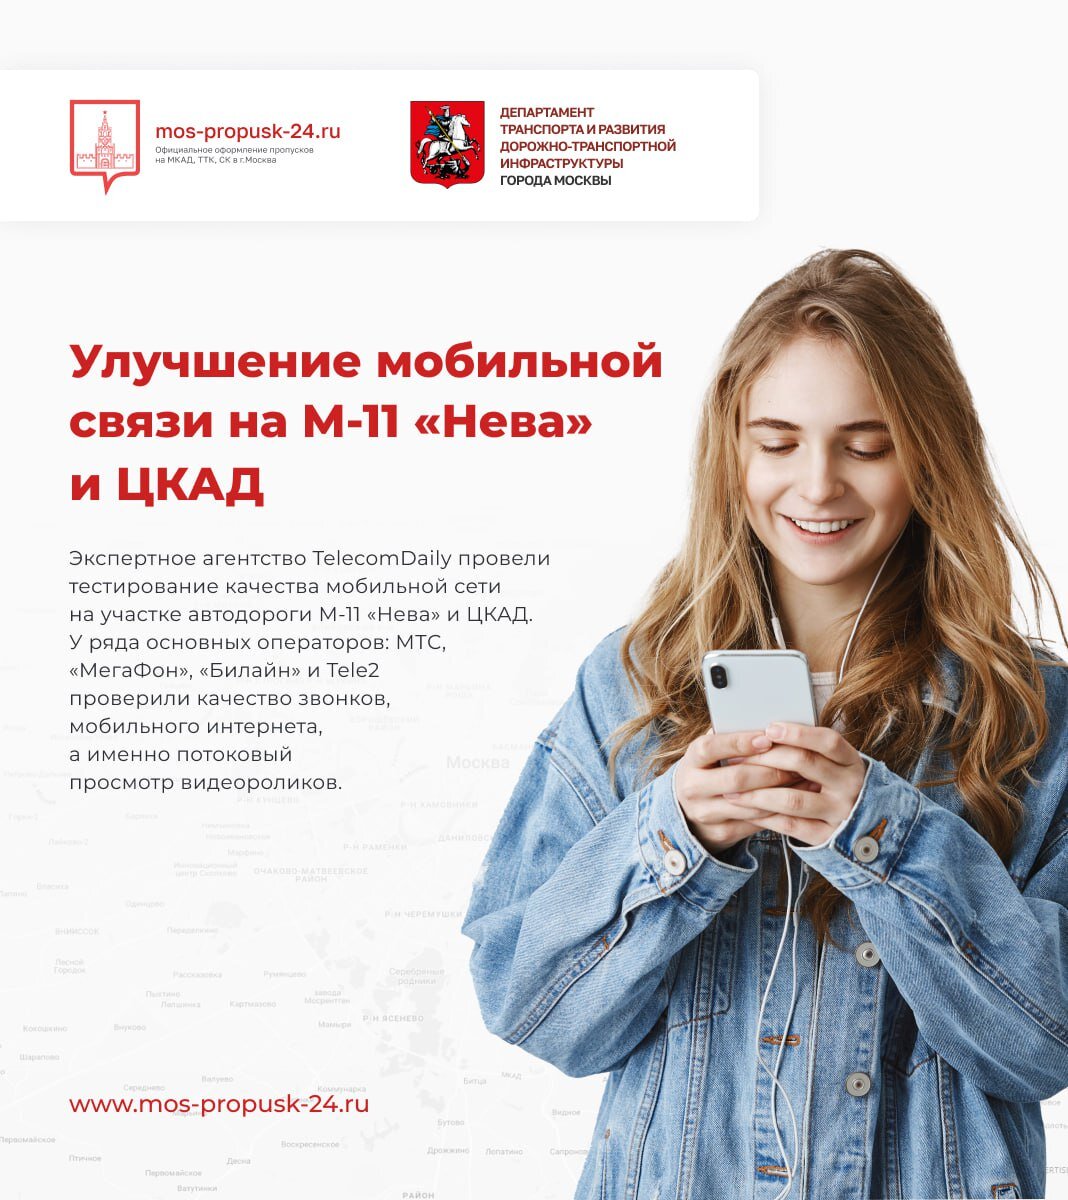 Экспертное агентство TelecomDailyпровели тестирование качества мобильной сети на участке автодороги М-11 «Нева» и ЦКАД.